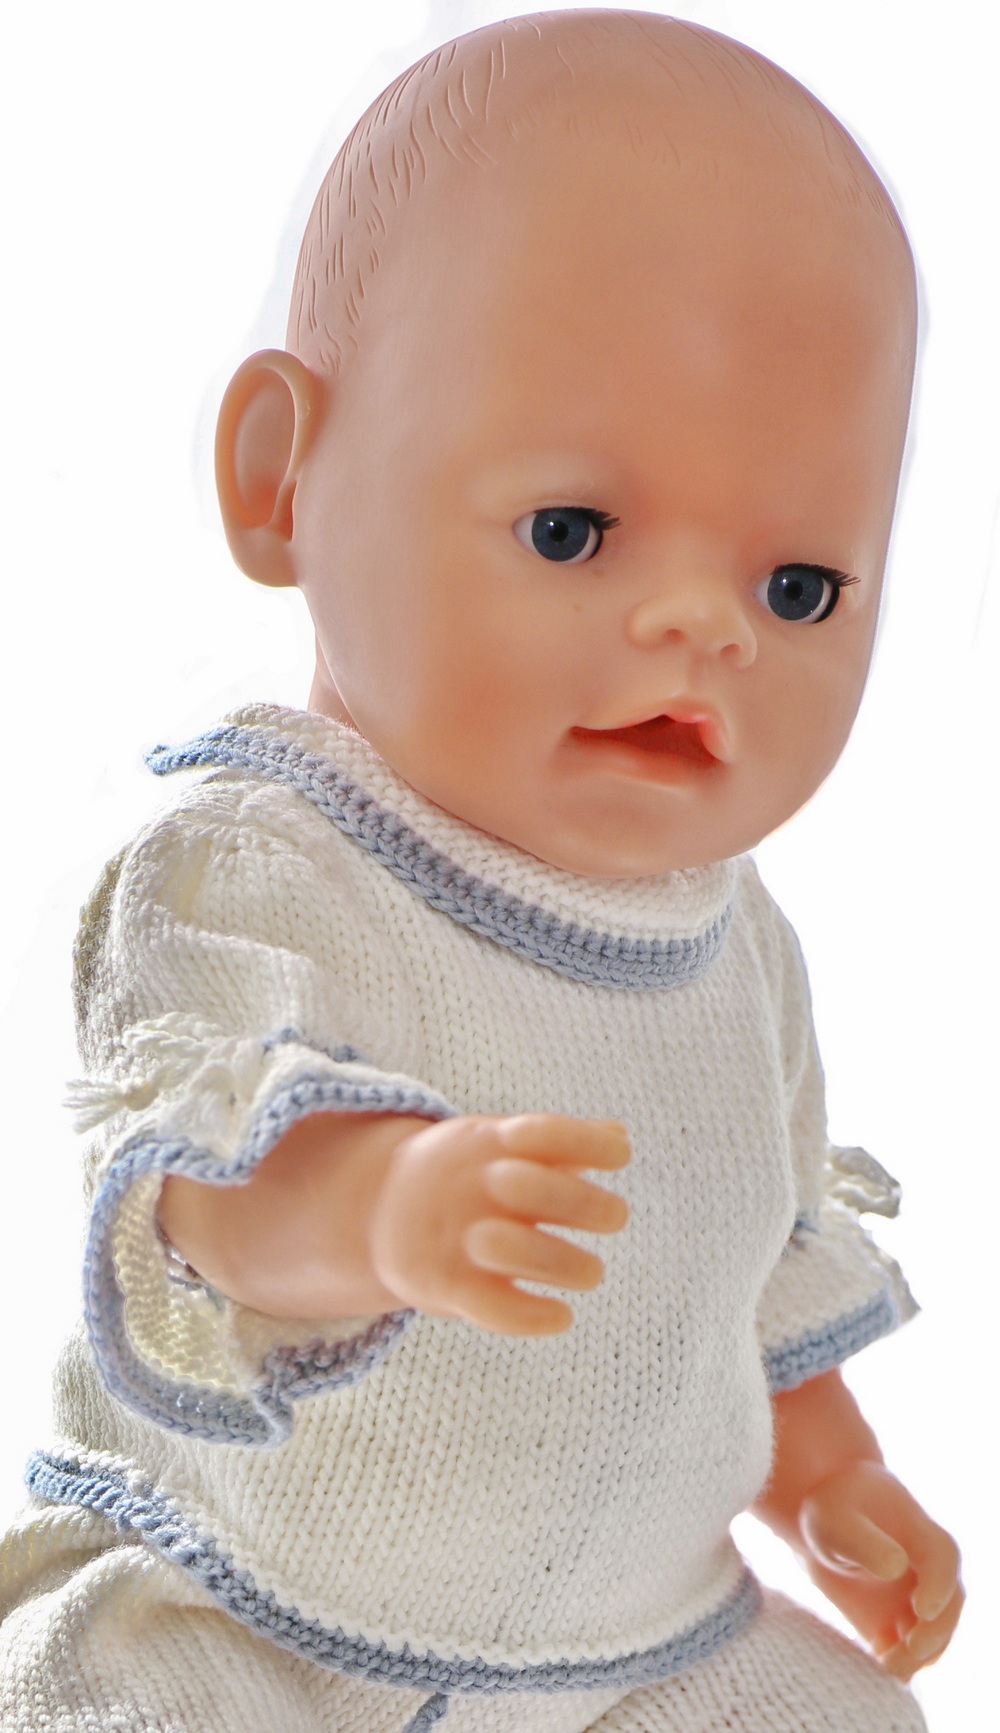 Pour le Babyborn, j'ai tricoté un pull à manches courtes avec les mêmes bordures que la tunique.